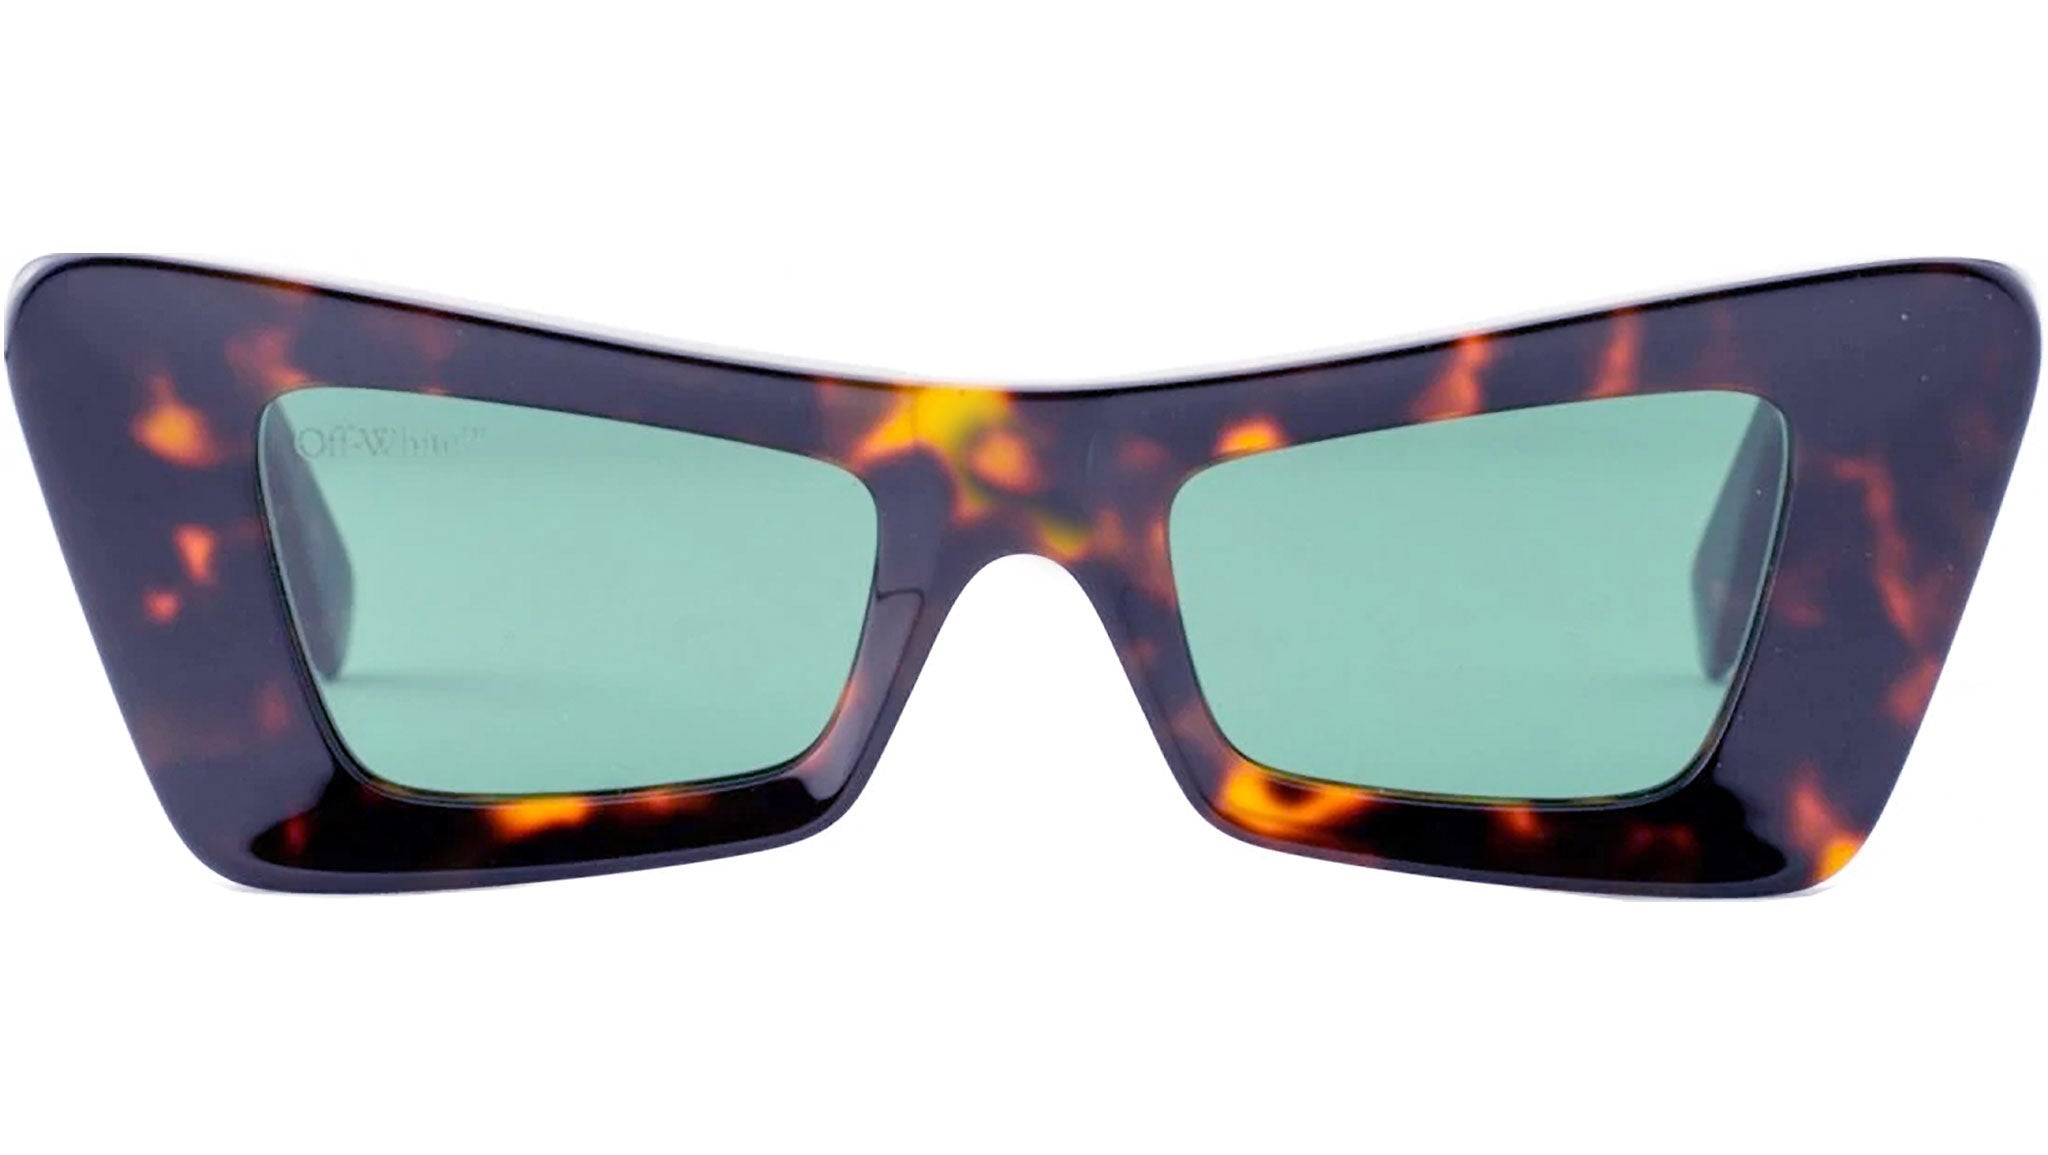 Off-White Virgil: havana rectangular sunglasses with green lenses